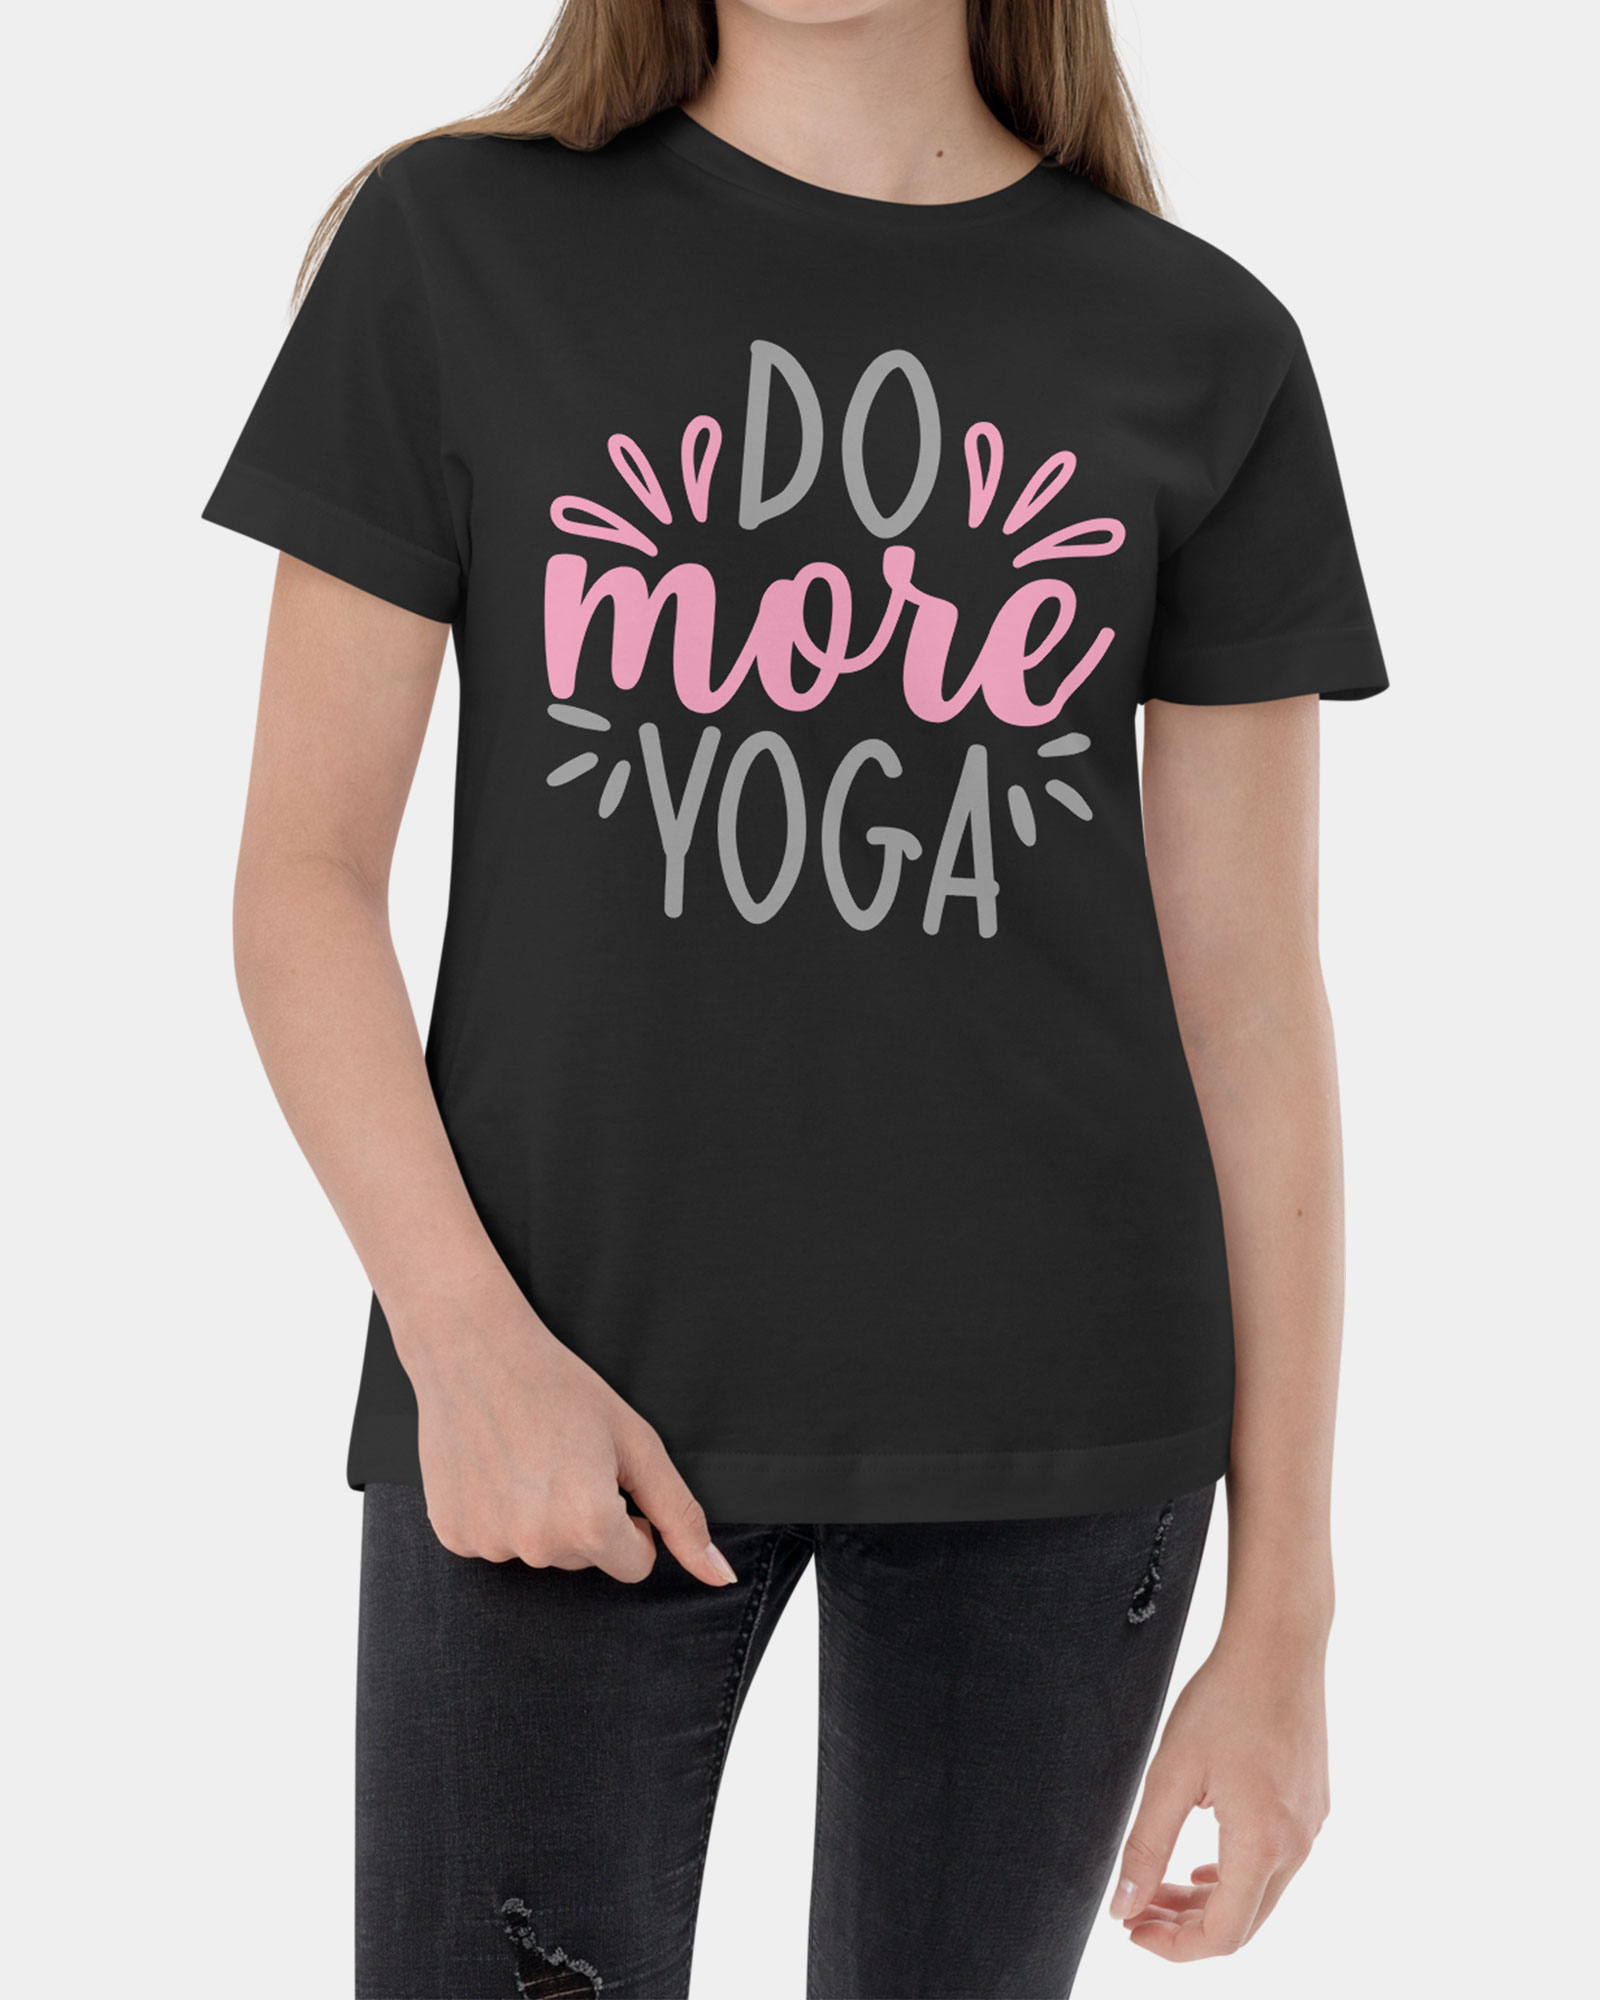 Do more yoga tshirt for girl